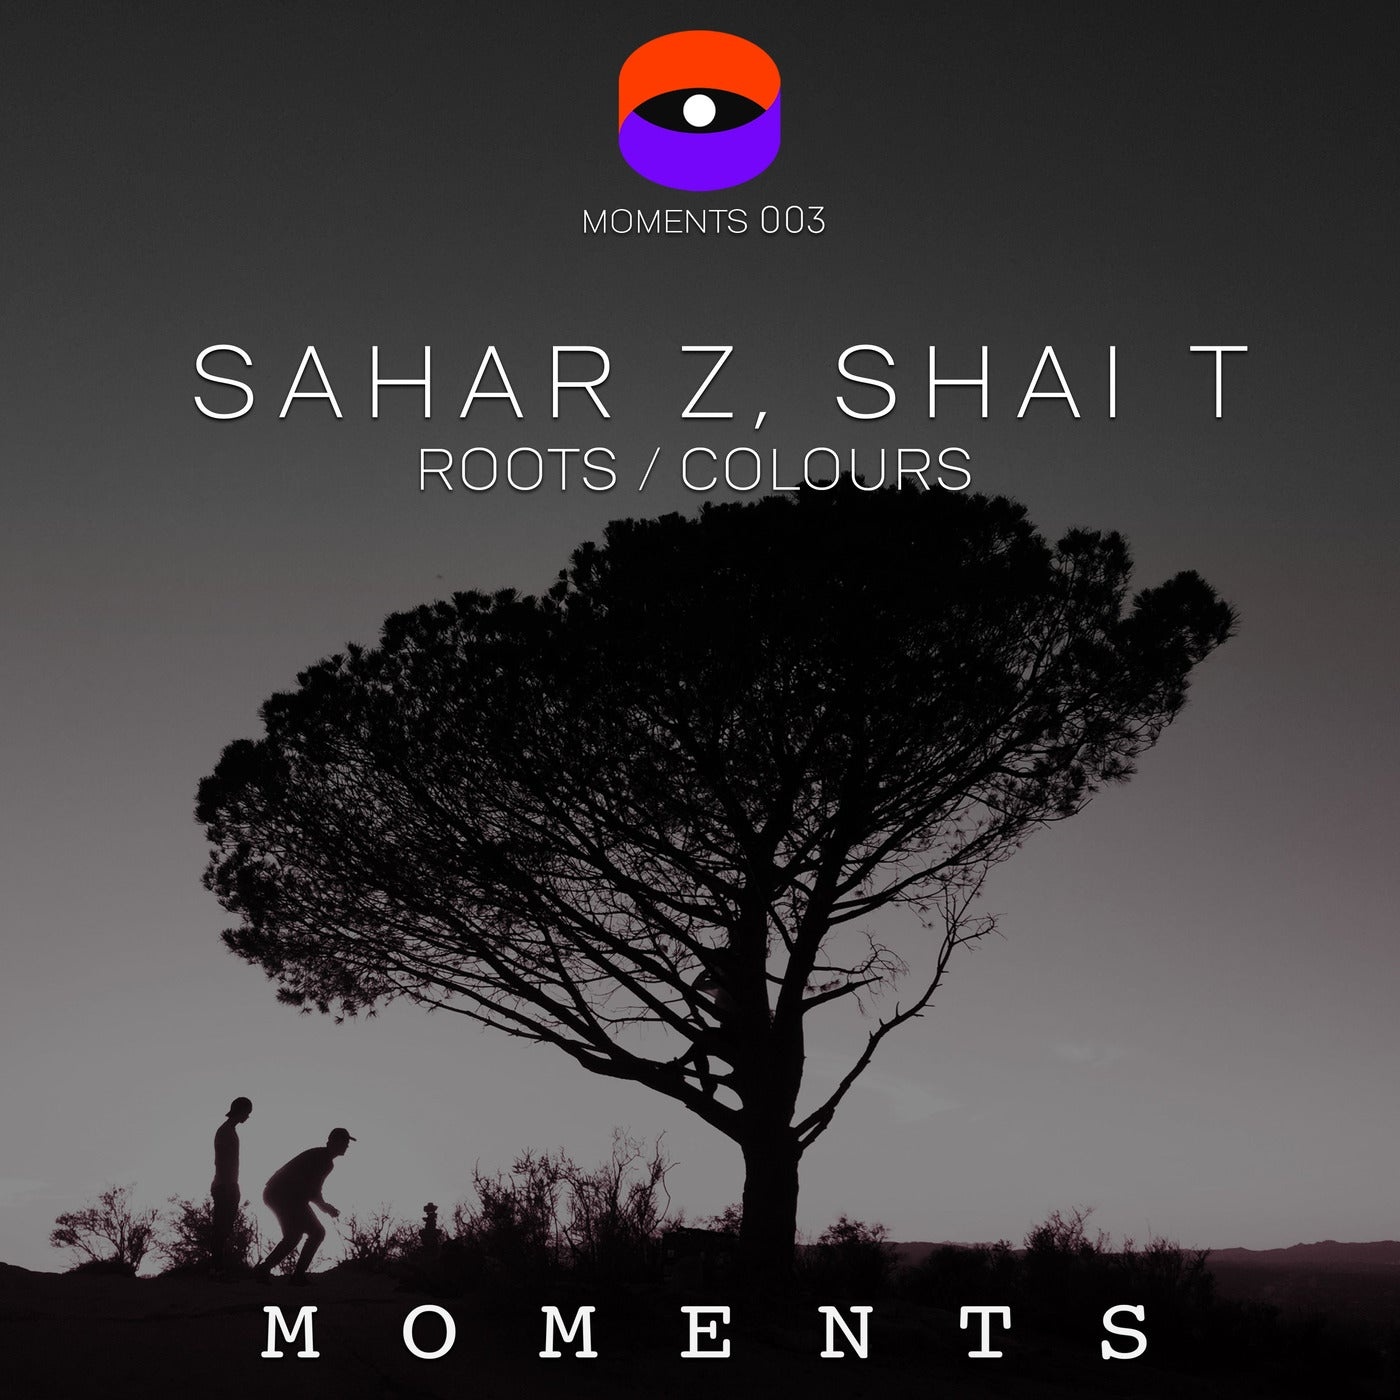 image cover: Sahar Z, Shai T - Roots / Colours / MOMENTS003